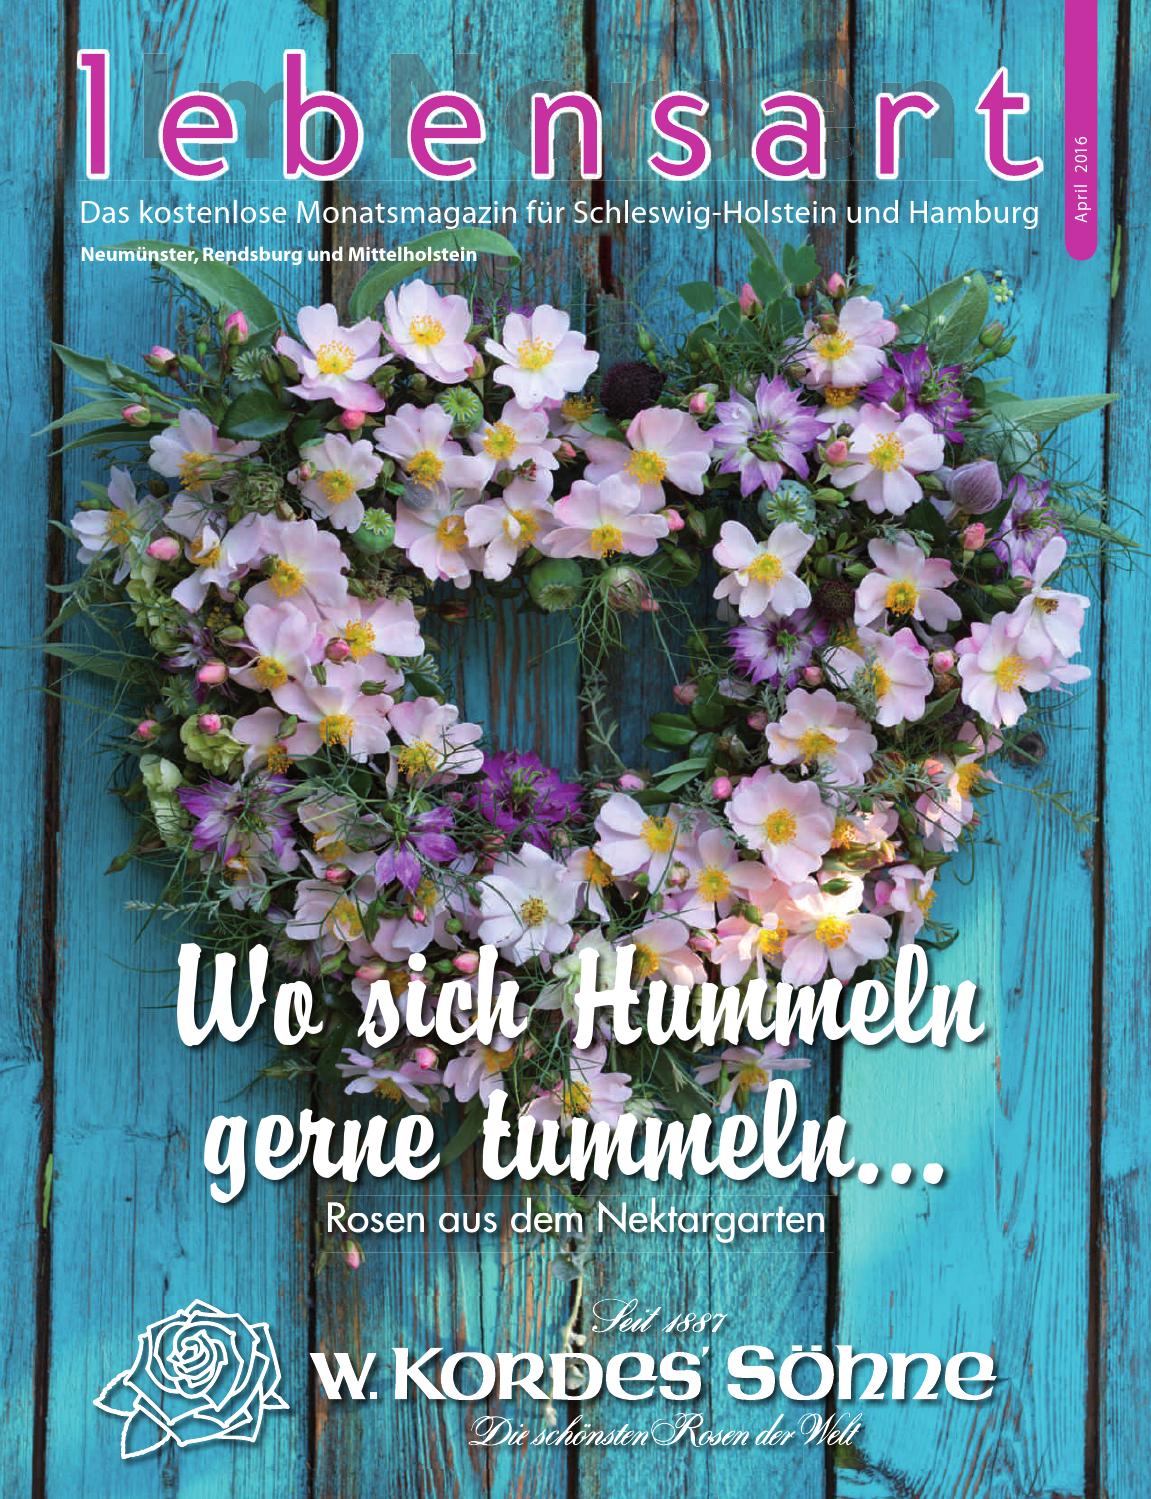 Miniatur Gartenaccessoires Schön Lebensart Im norden Neumünster April 2016 by Verlagskontor